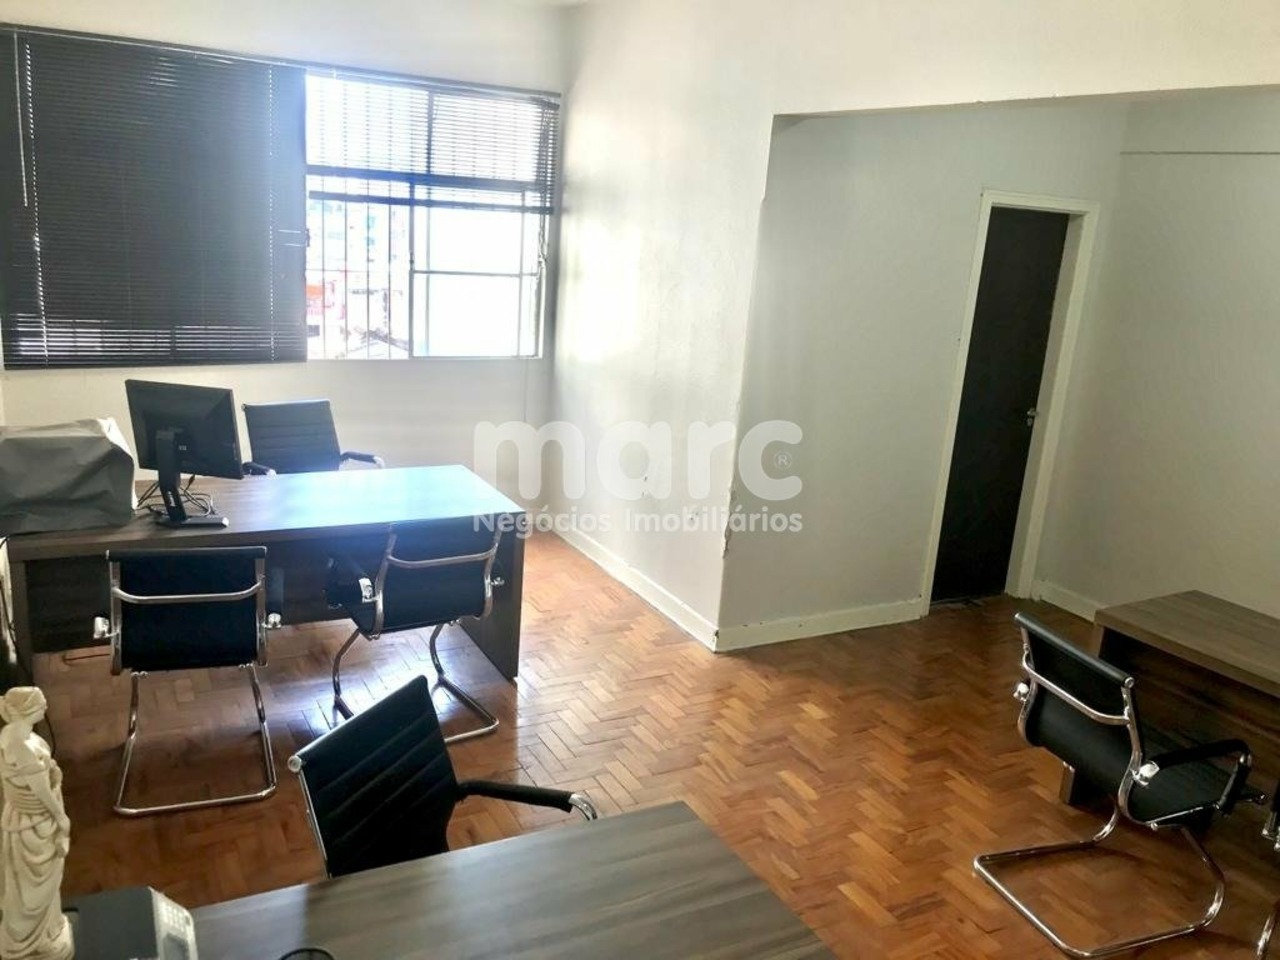 Comercial com 0 quartos para alugar, 0m² em Avenida Ipiranga, República, São Paulo, SP